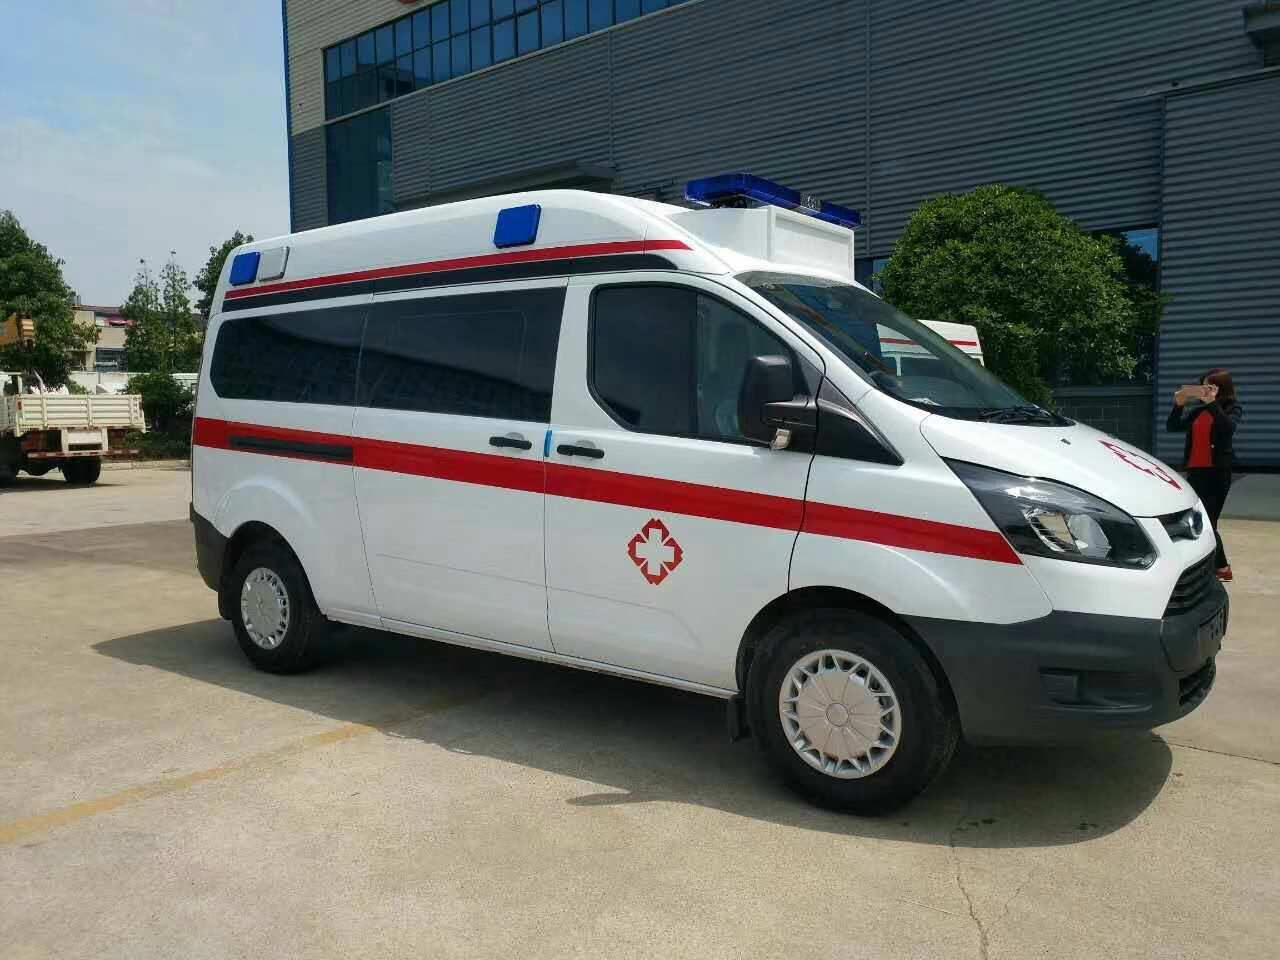 沧州出院转院救护车